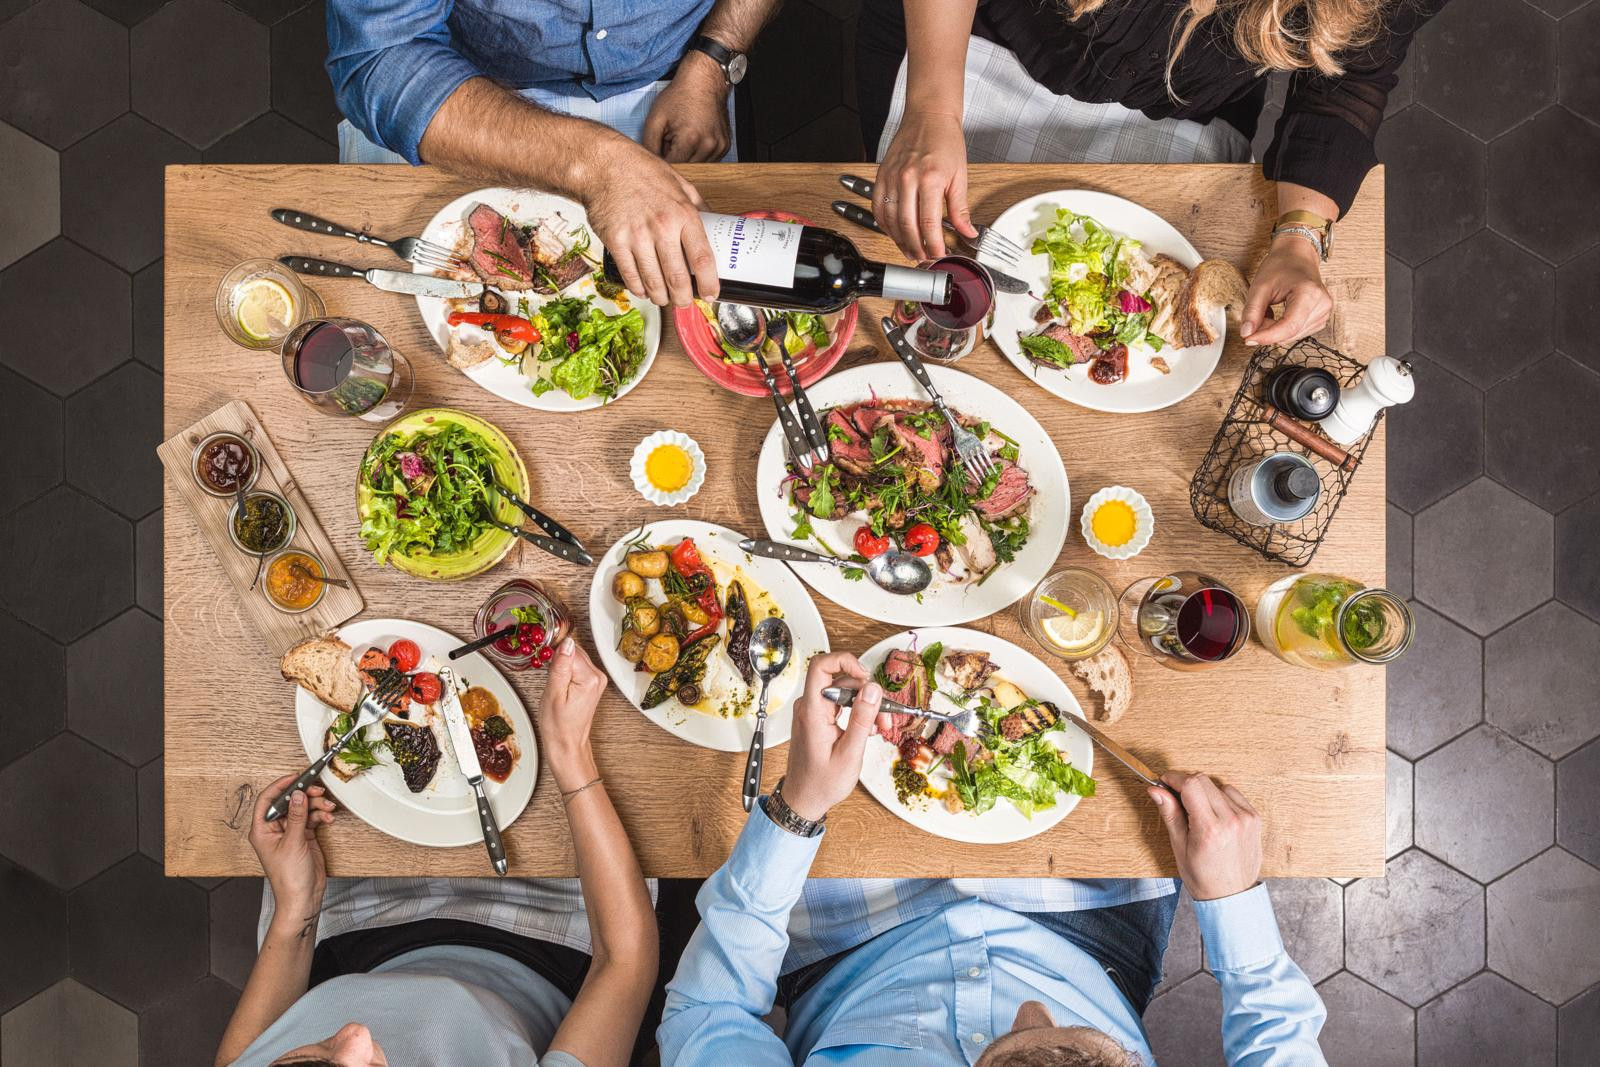 Blick von auf einen mit Speisen und Getränken gedeckten Tisch an dem vier Personen sitzen.